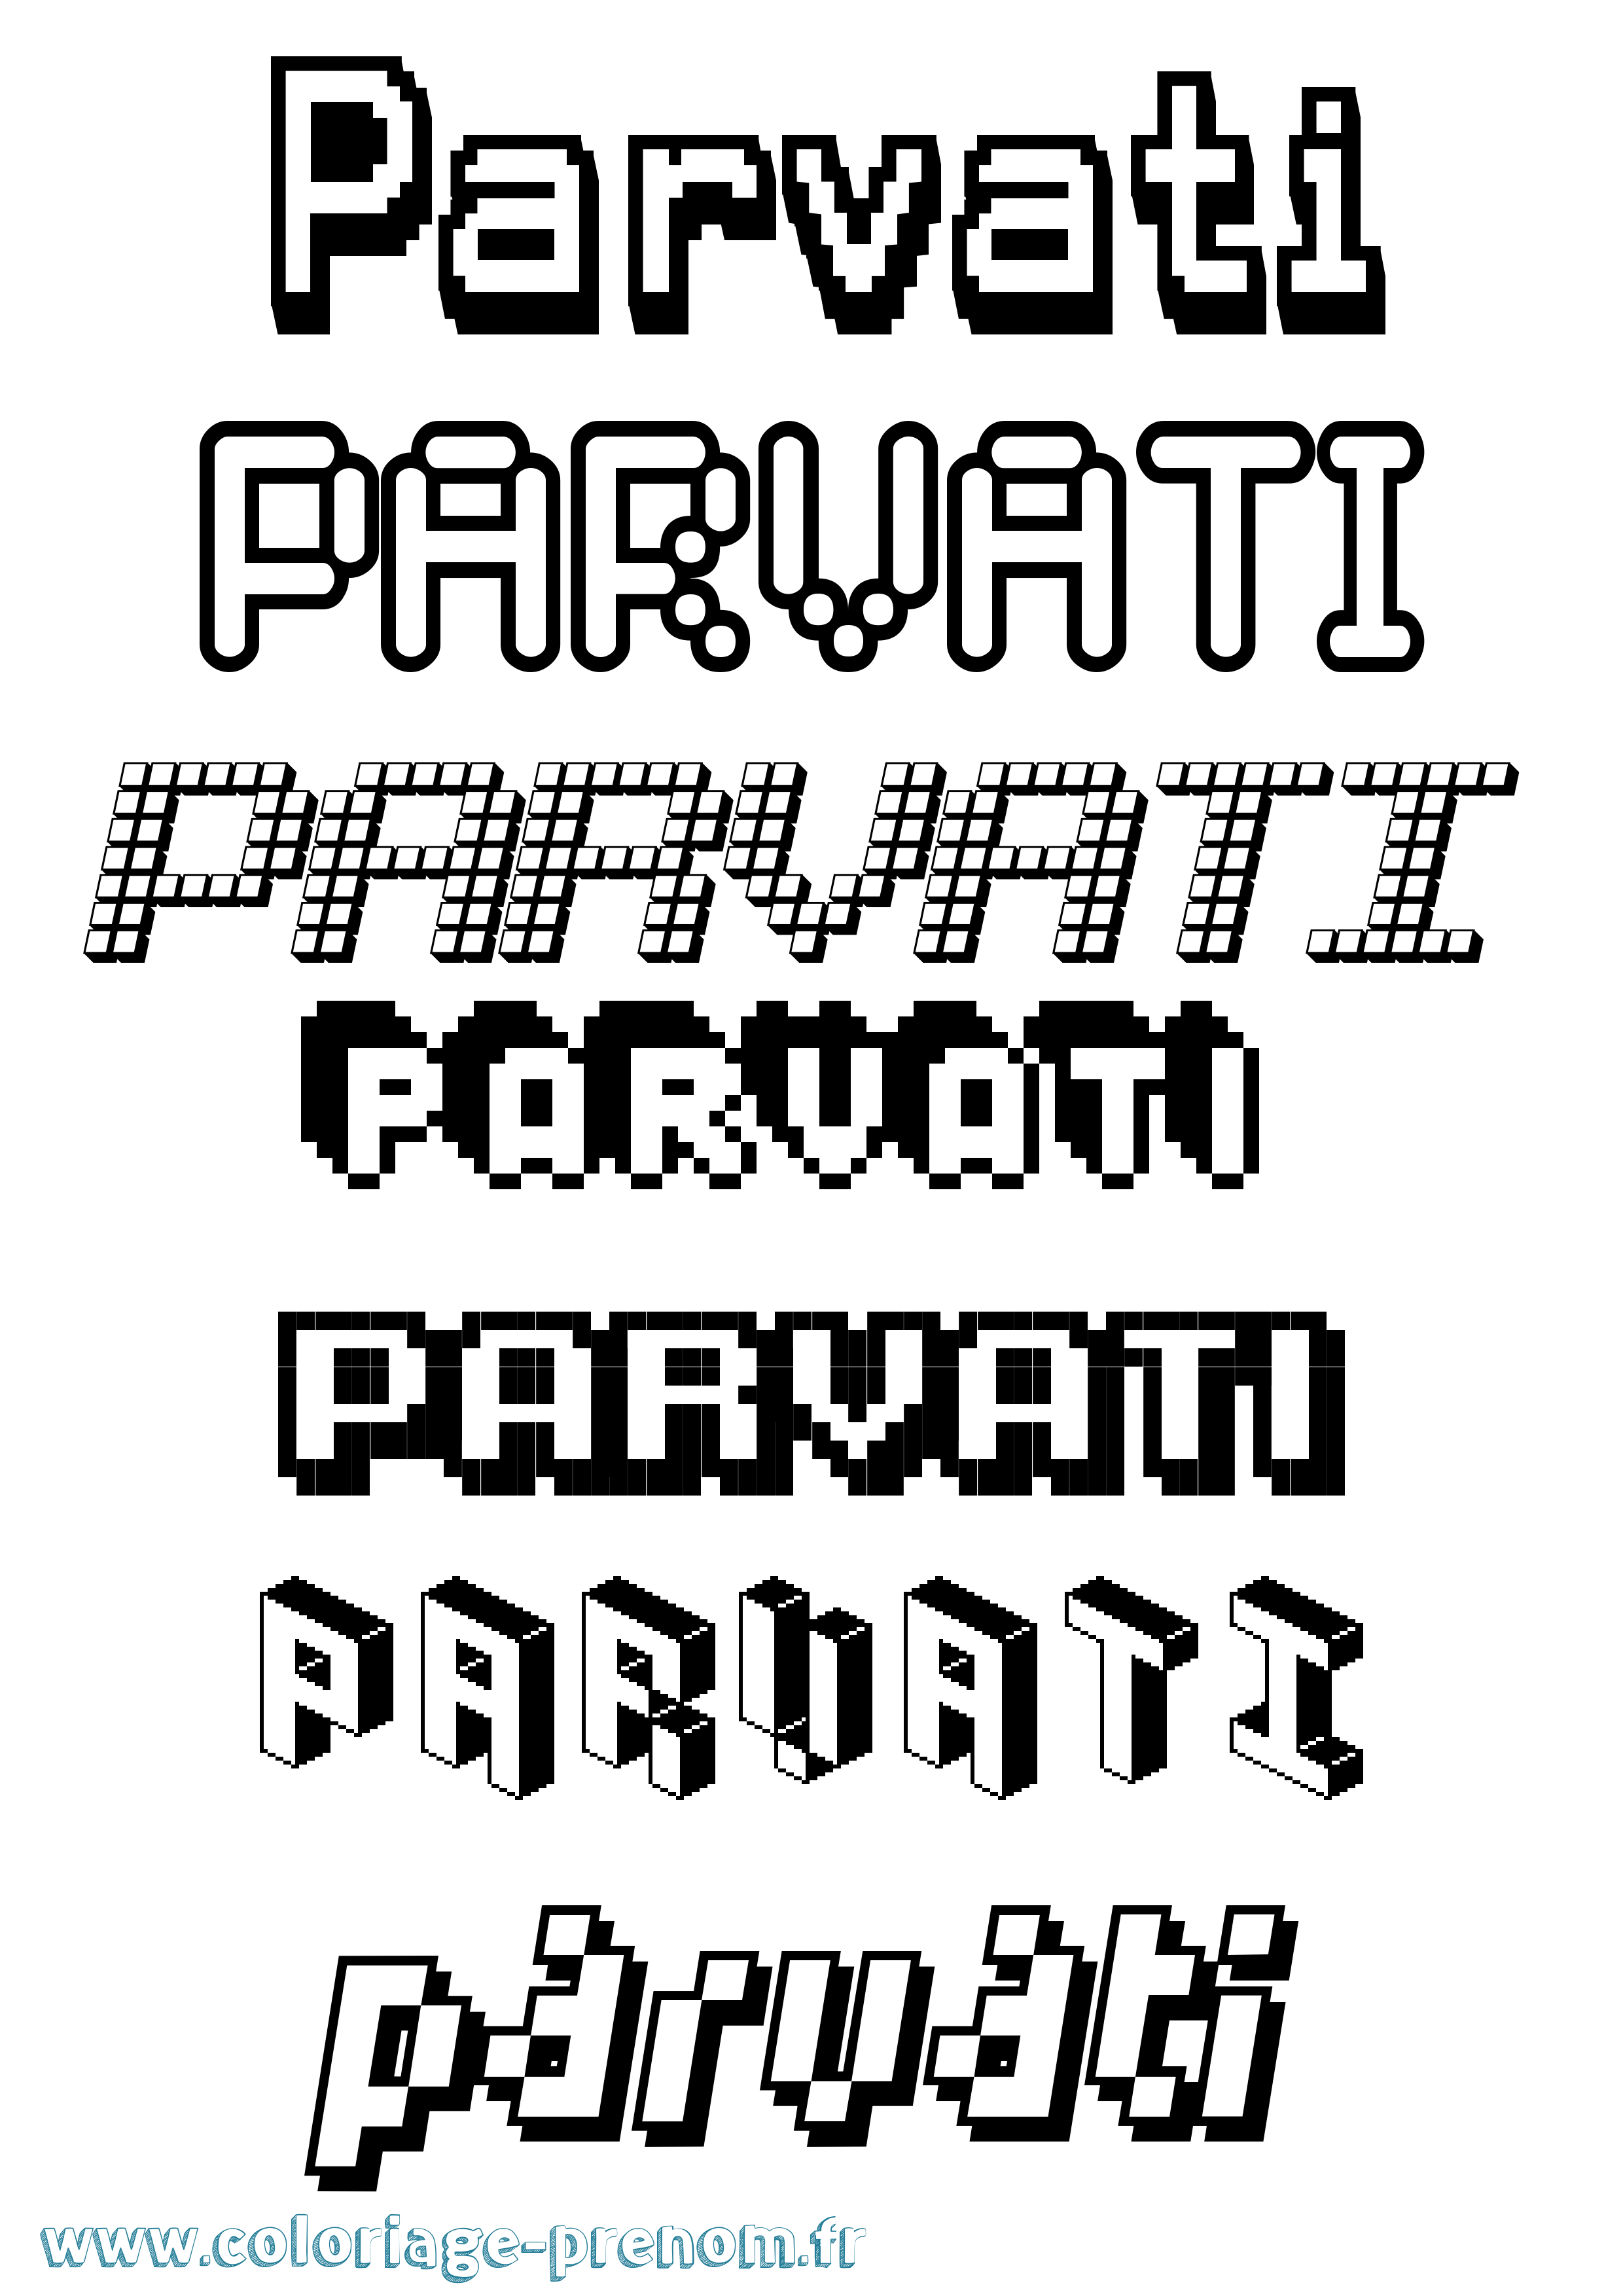 Coloriage prénom Parvati Pixel